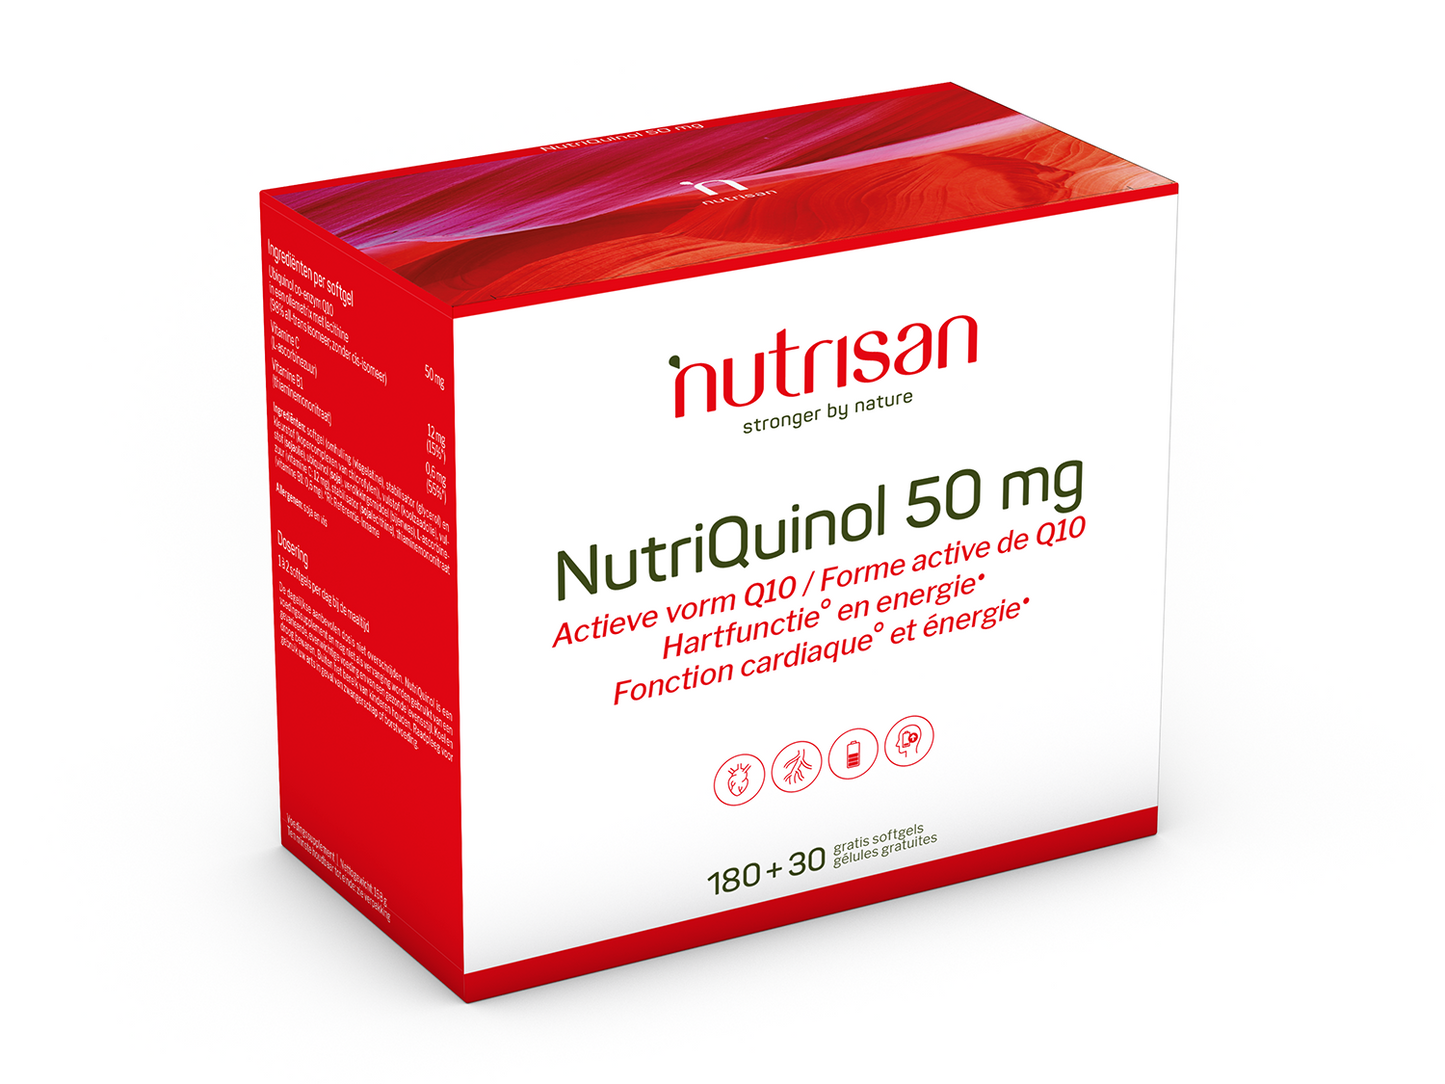 Nutrisan NutriQuinol 50 mg - Supplement voor hartfunctie en energie